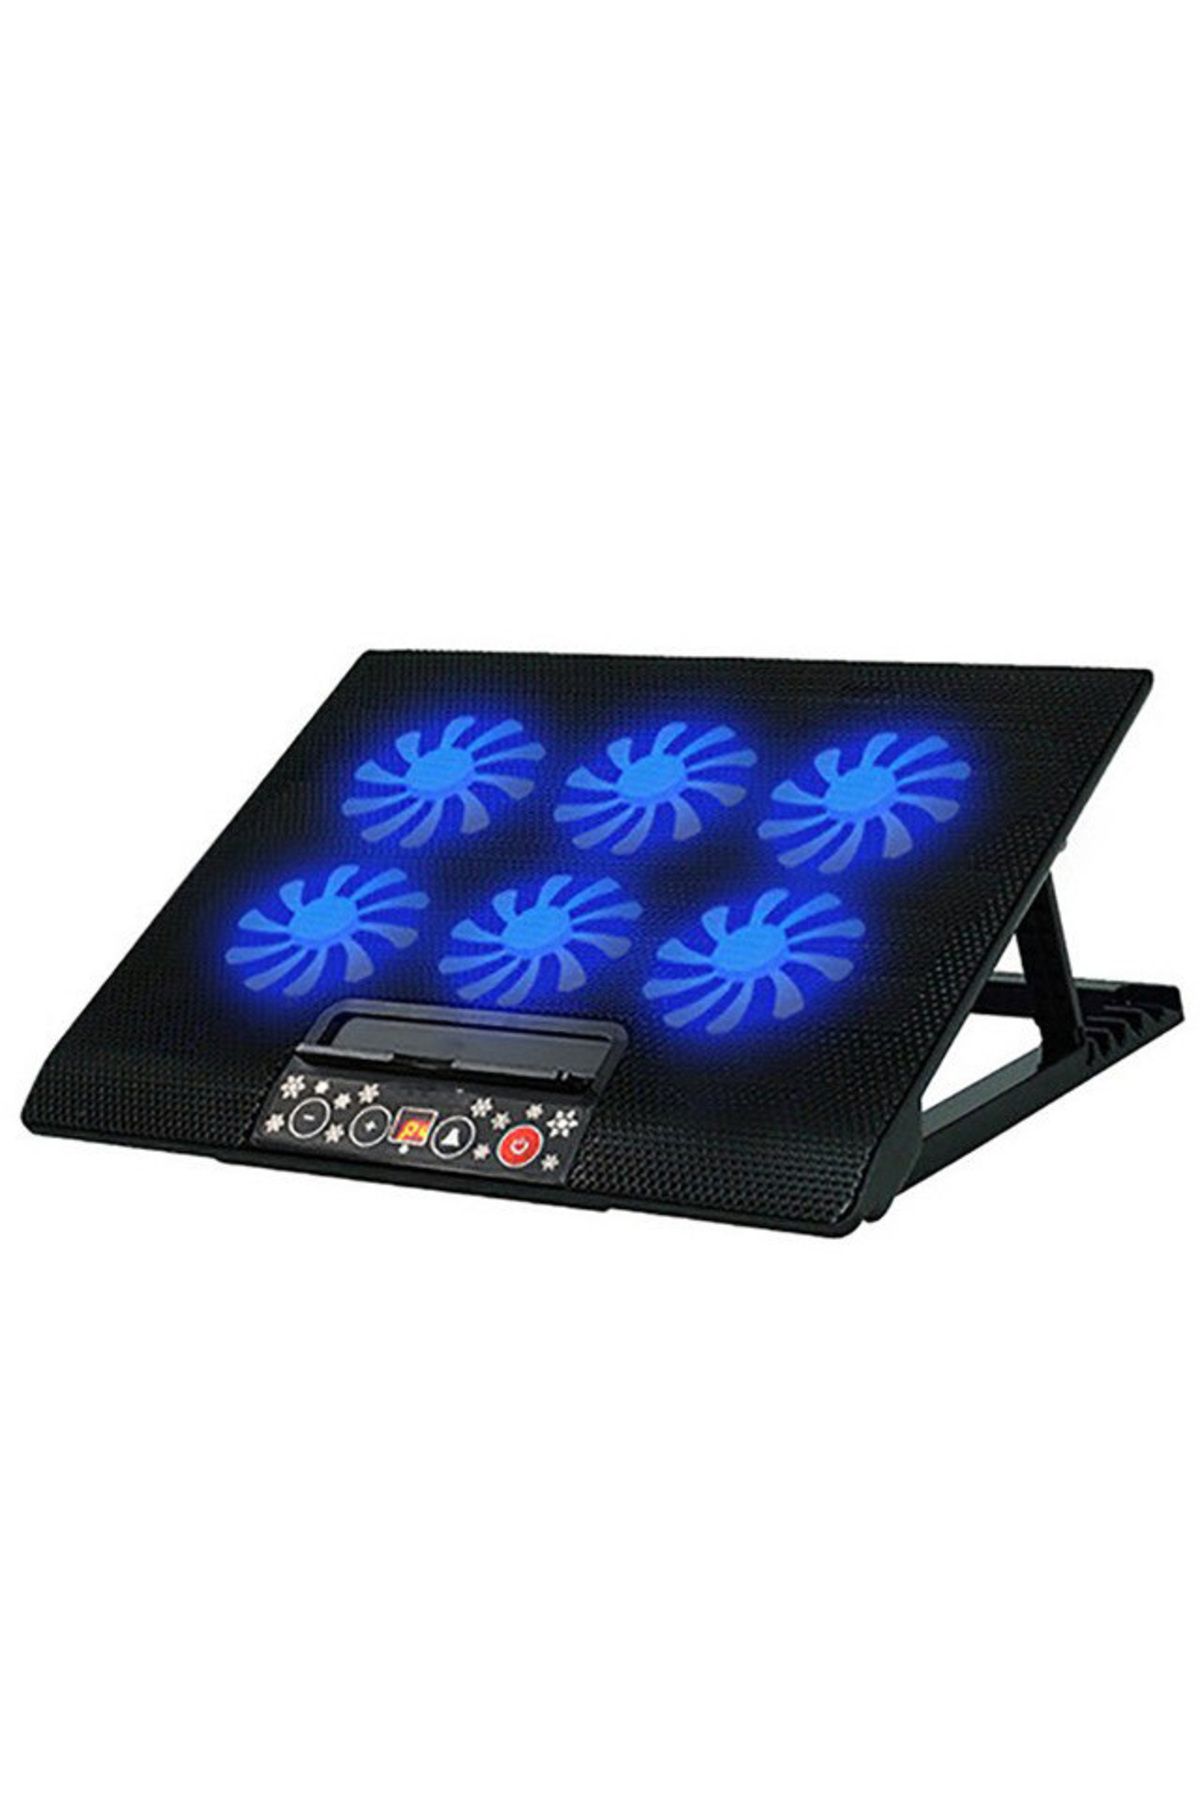 Koodmax Ergostand Gaming Notebook Sogutucu 12-17 Inch 6 Fanlı 5 Kademeli Laptop Soğutucu